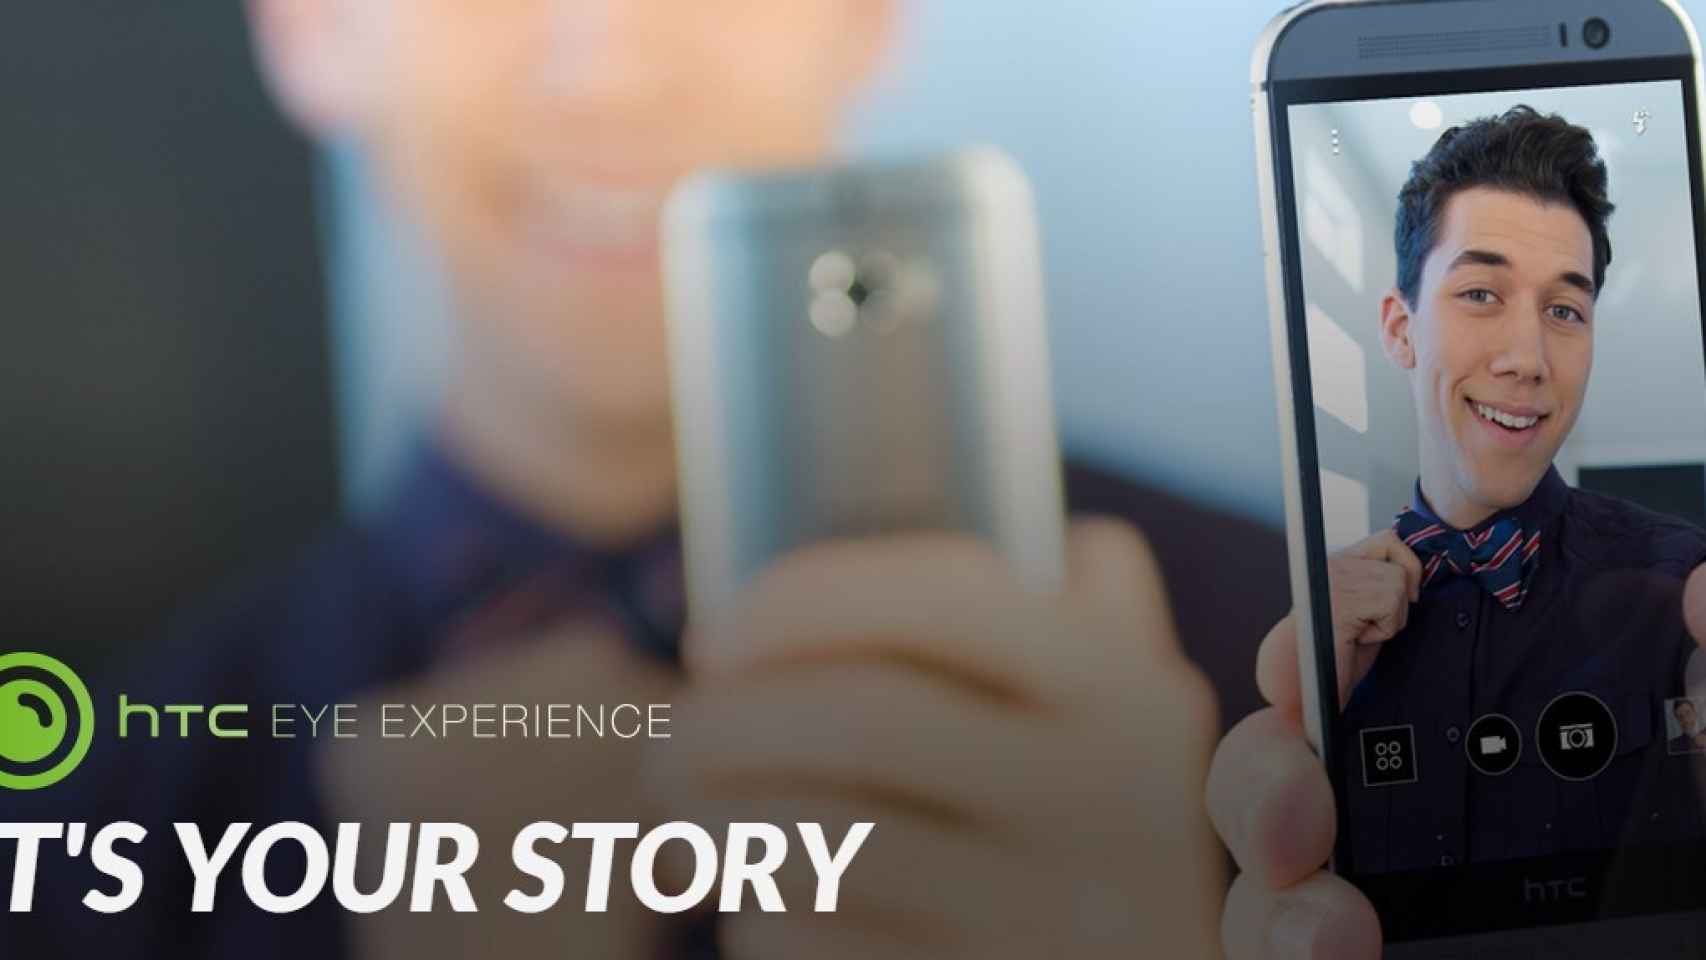 HTC Eye Experience: Un repaso por sus nuevas funciones y bondades